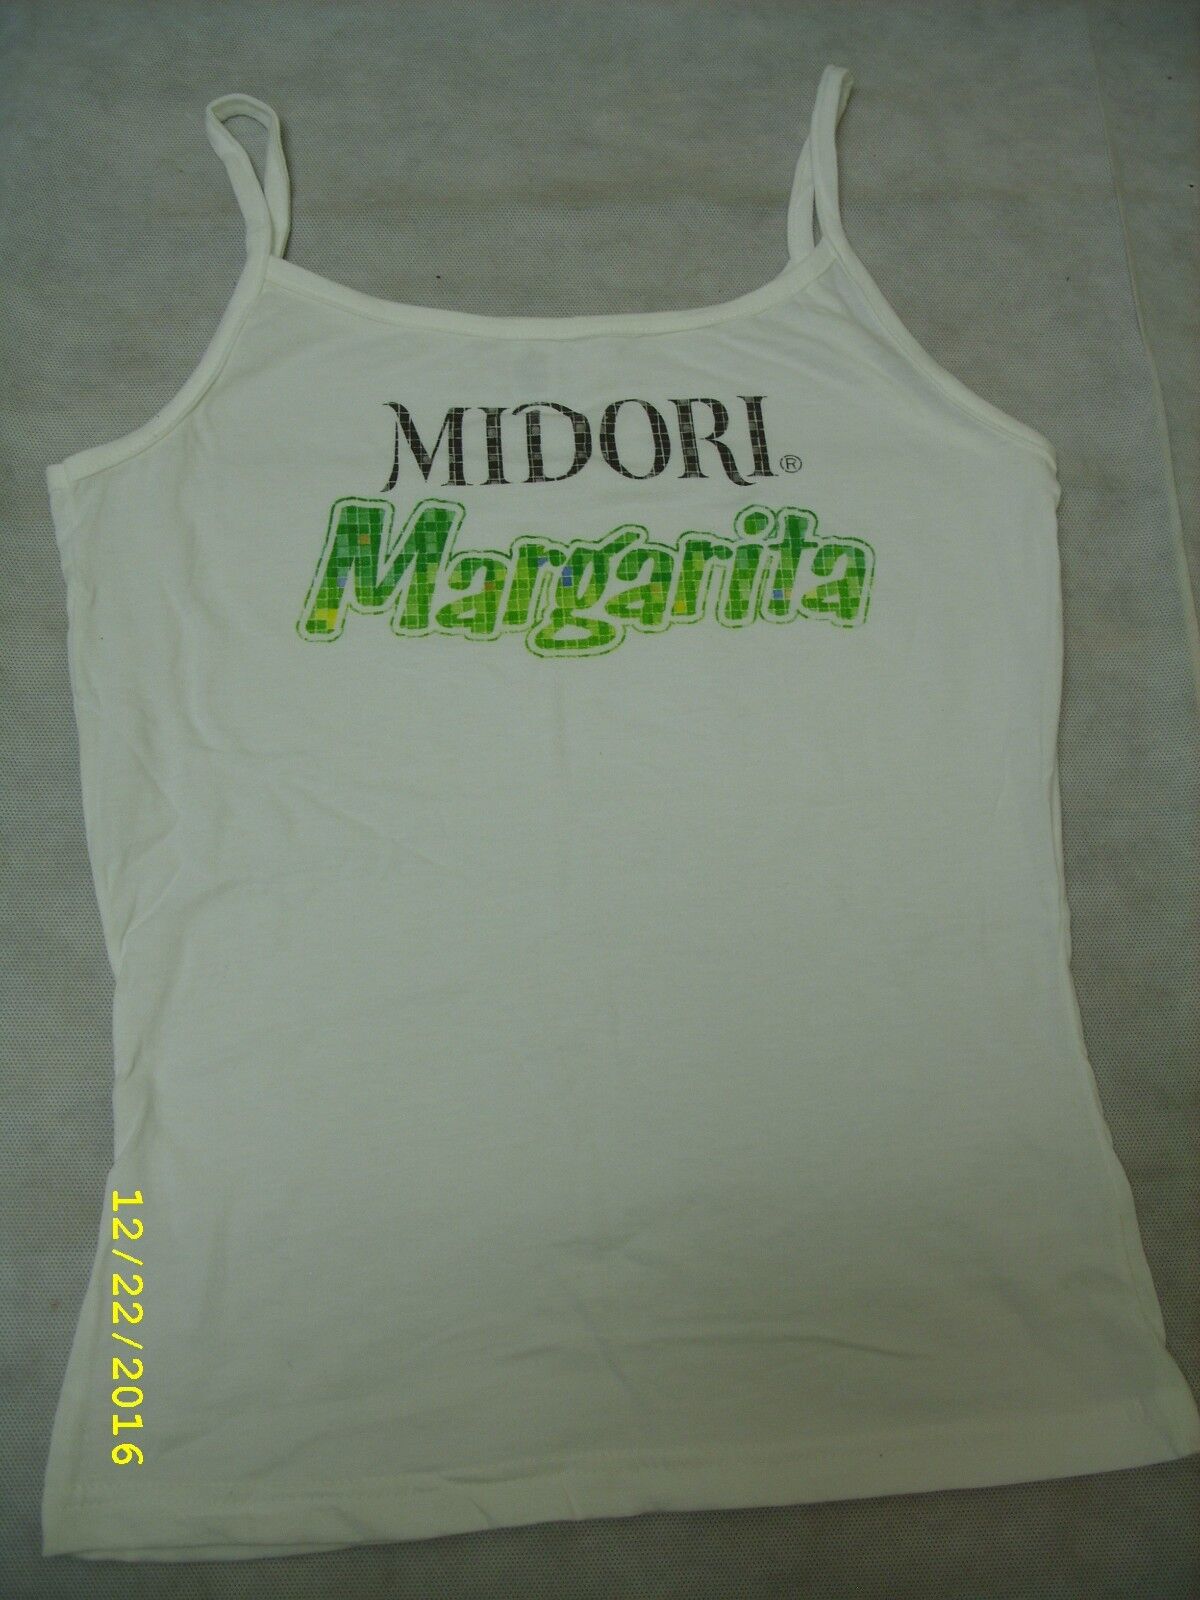 Midori Melon Liqueur Margarita - Ladies Tank Top T-Shirt *NEW*